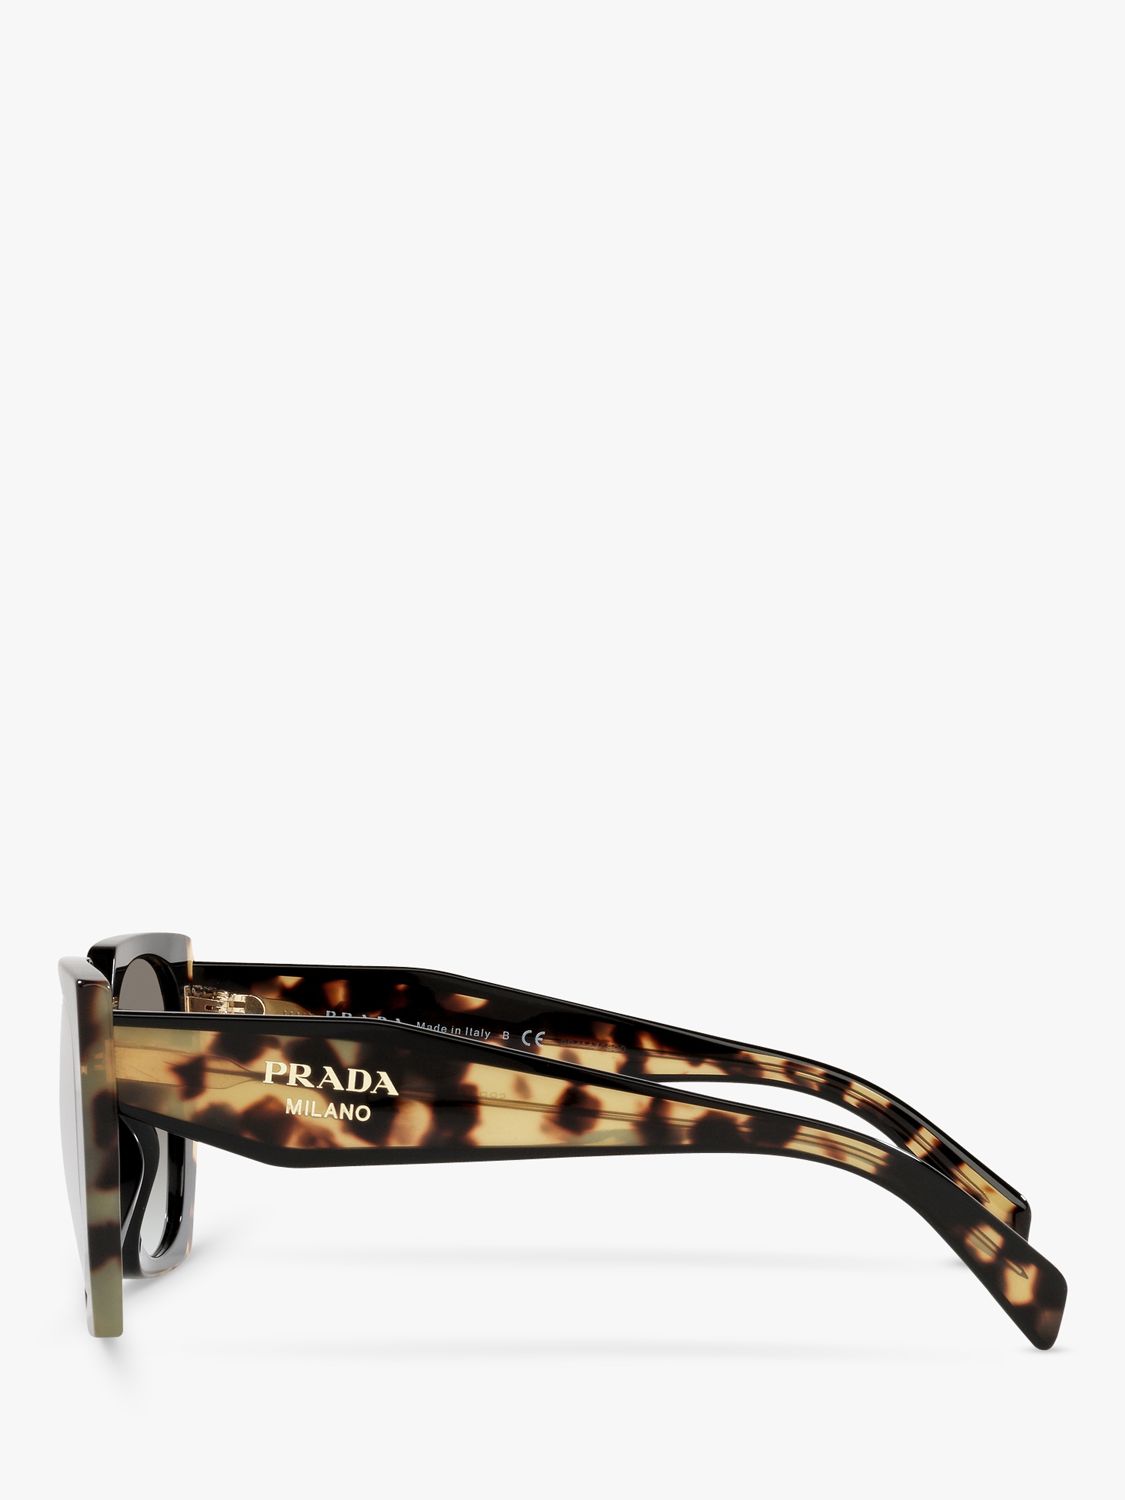 Prada PR 15WS Women's Rectangular Chunky Frame Sunglasses, Tortoise/Black Gradient